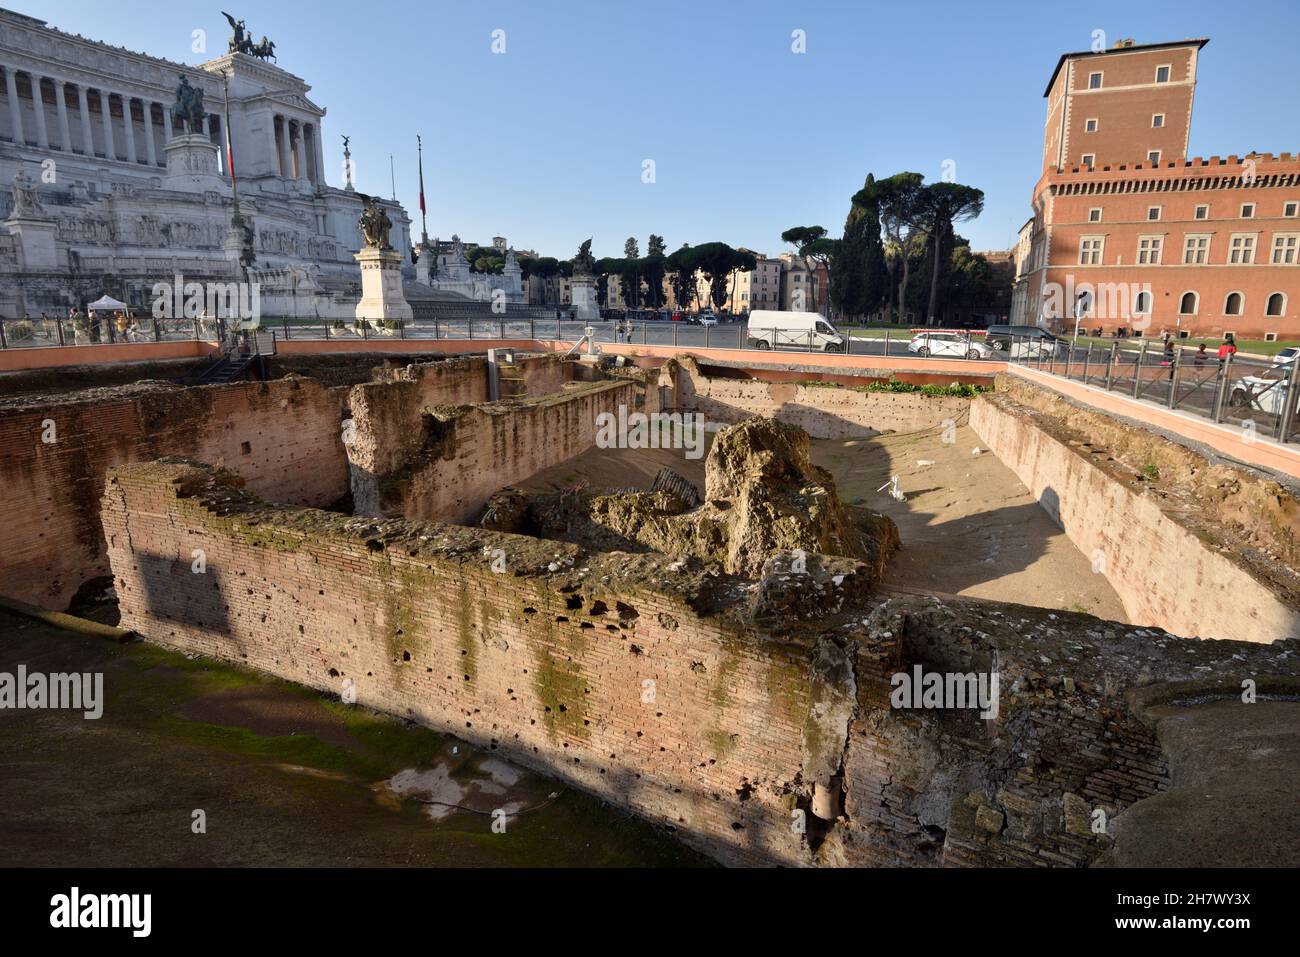 Italie, Rome, Piazza Venezia, ruines des auditoriums d'Hadrien Banque D'Images